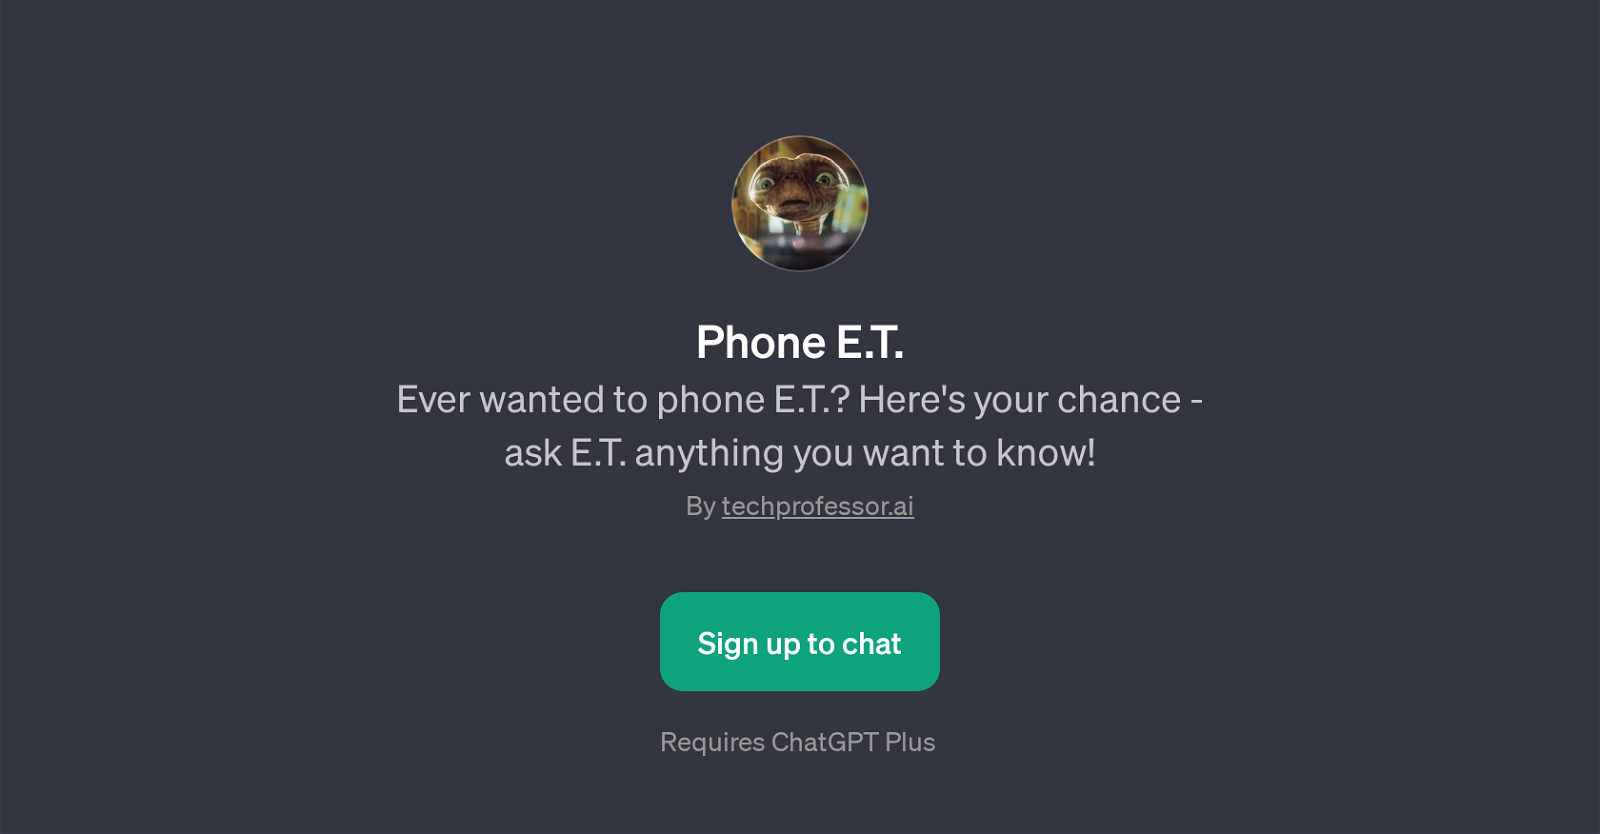 Phone E.T. website